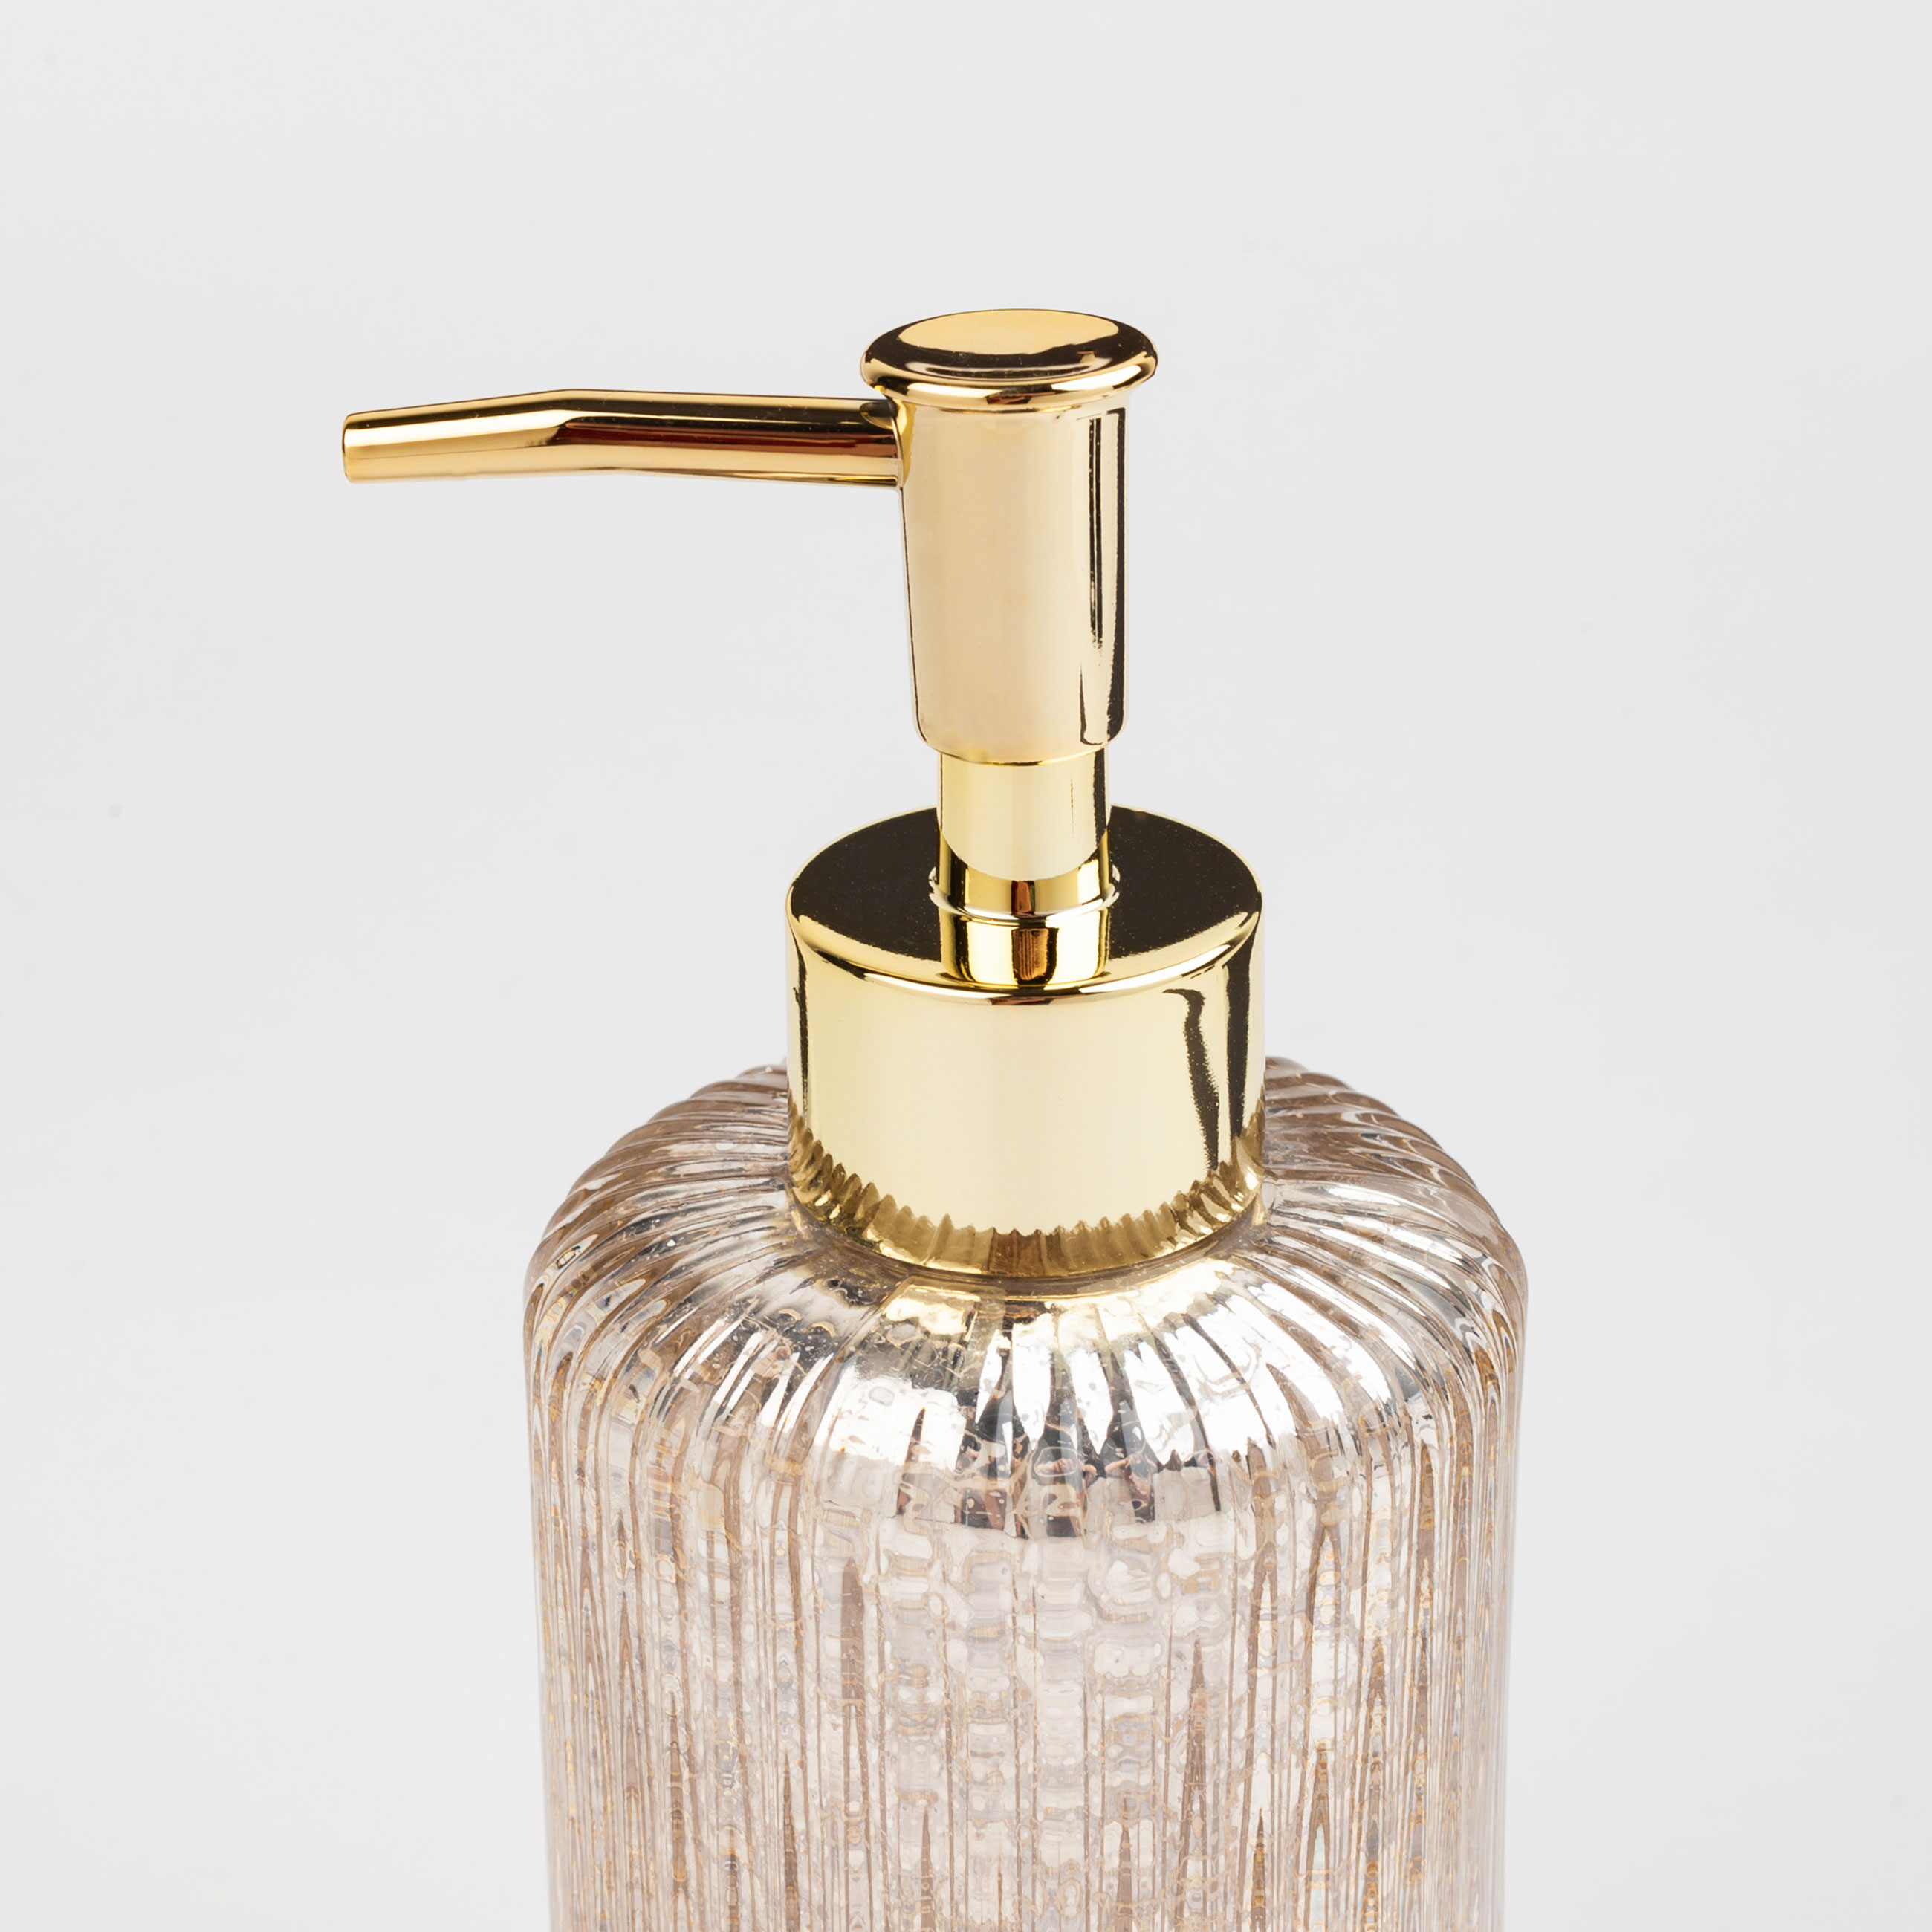 Liquid soap dispenser, 240 ml, glass / plastic, golden, Diana изображение № 2